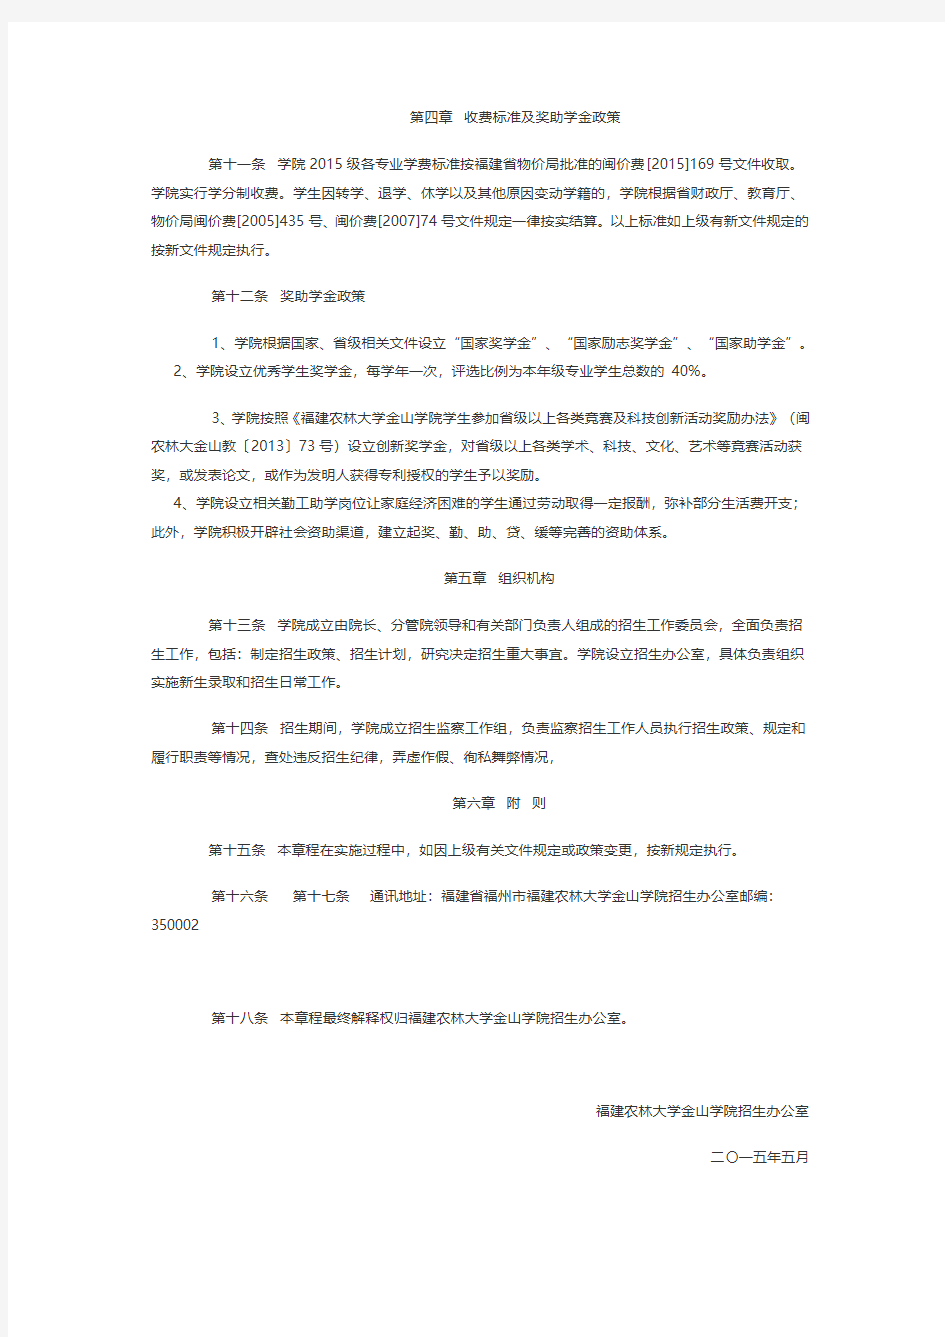 福建农林大学金山学院2015年招生章程(已经过主管部门审核)